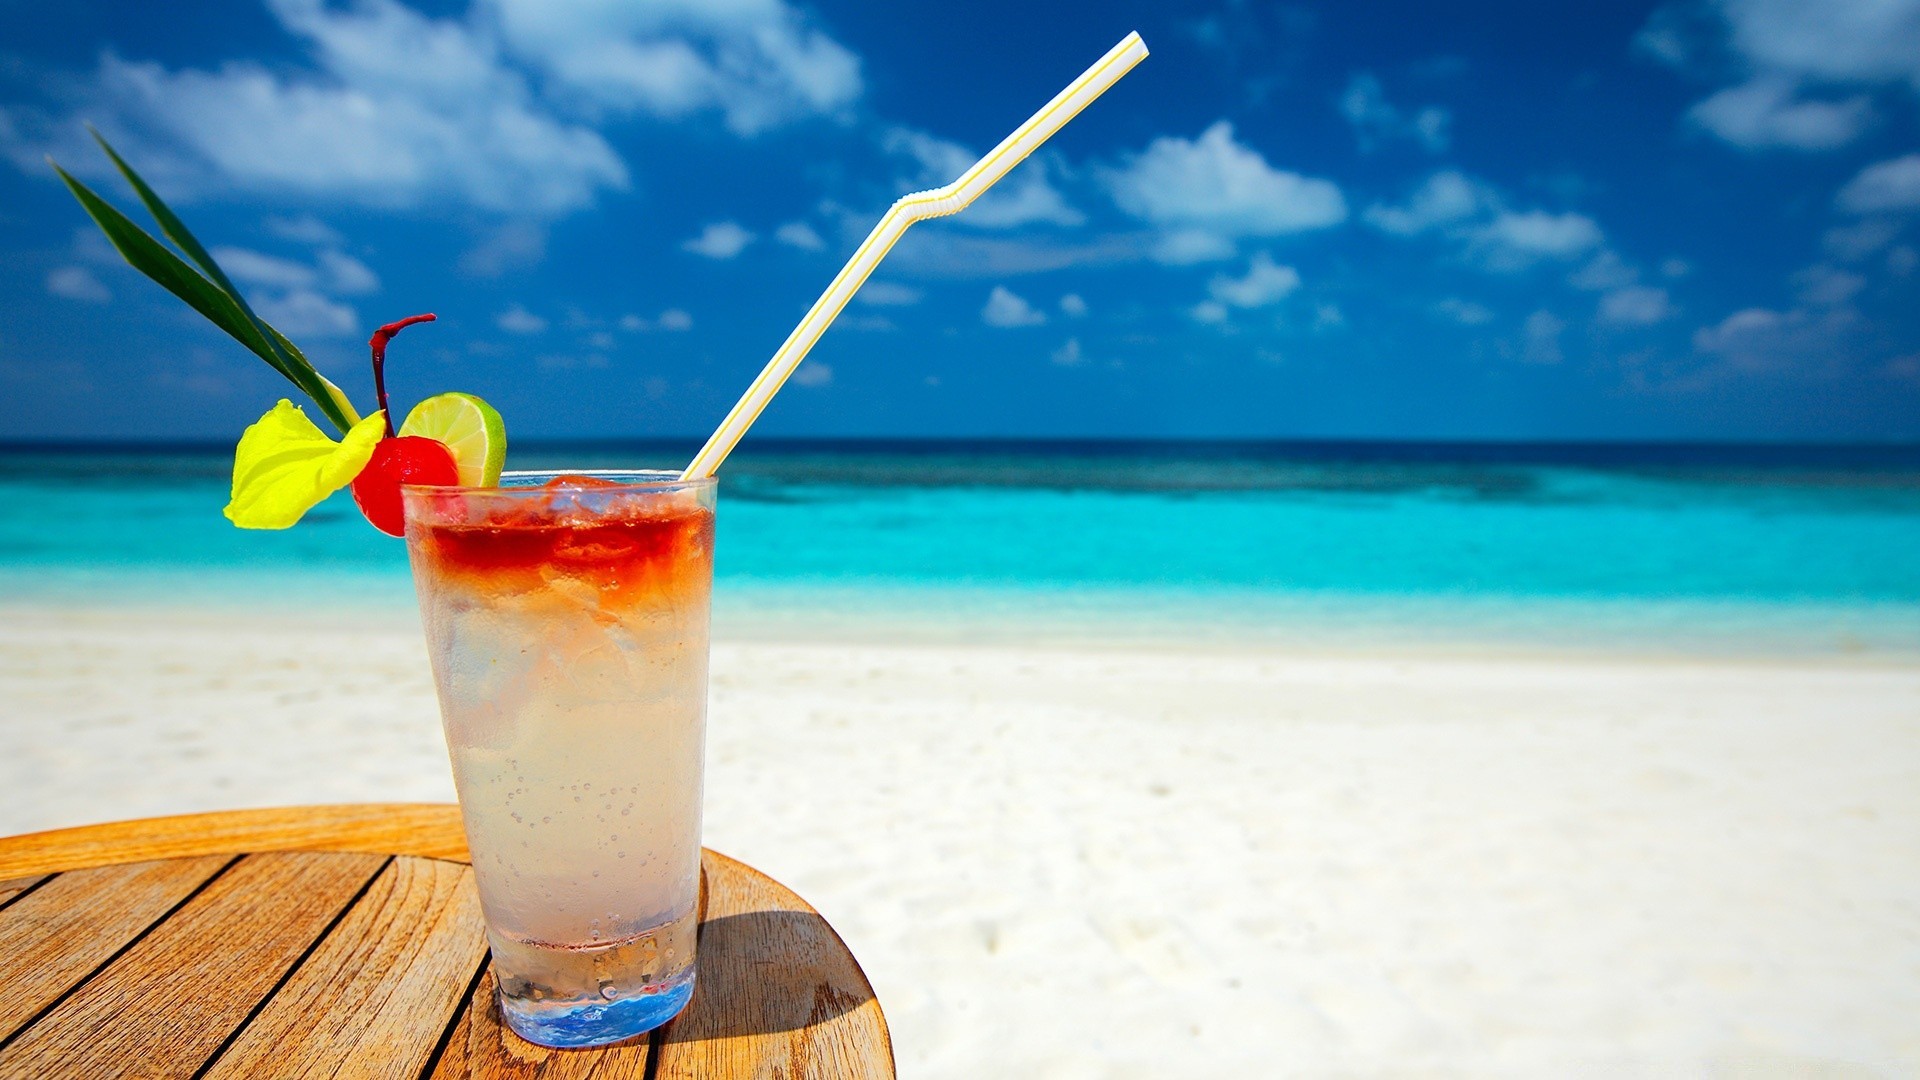 напитки тропический лето пляж песок отпуск экзотические коктейль пить релаксация моря лед курорт солнце стекло холодная путешествия идиллия